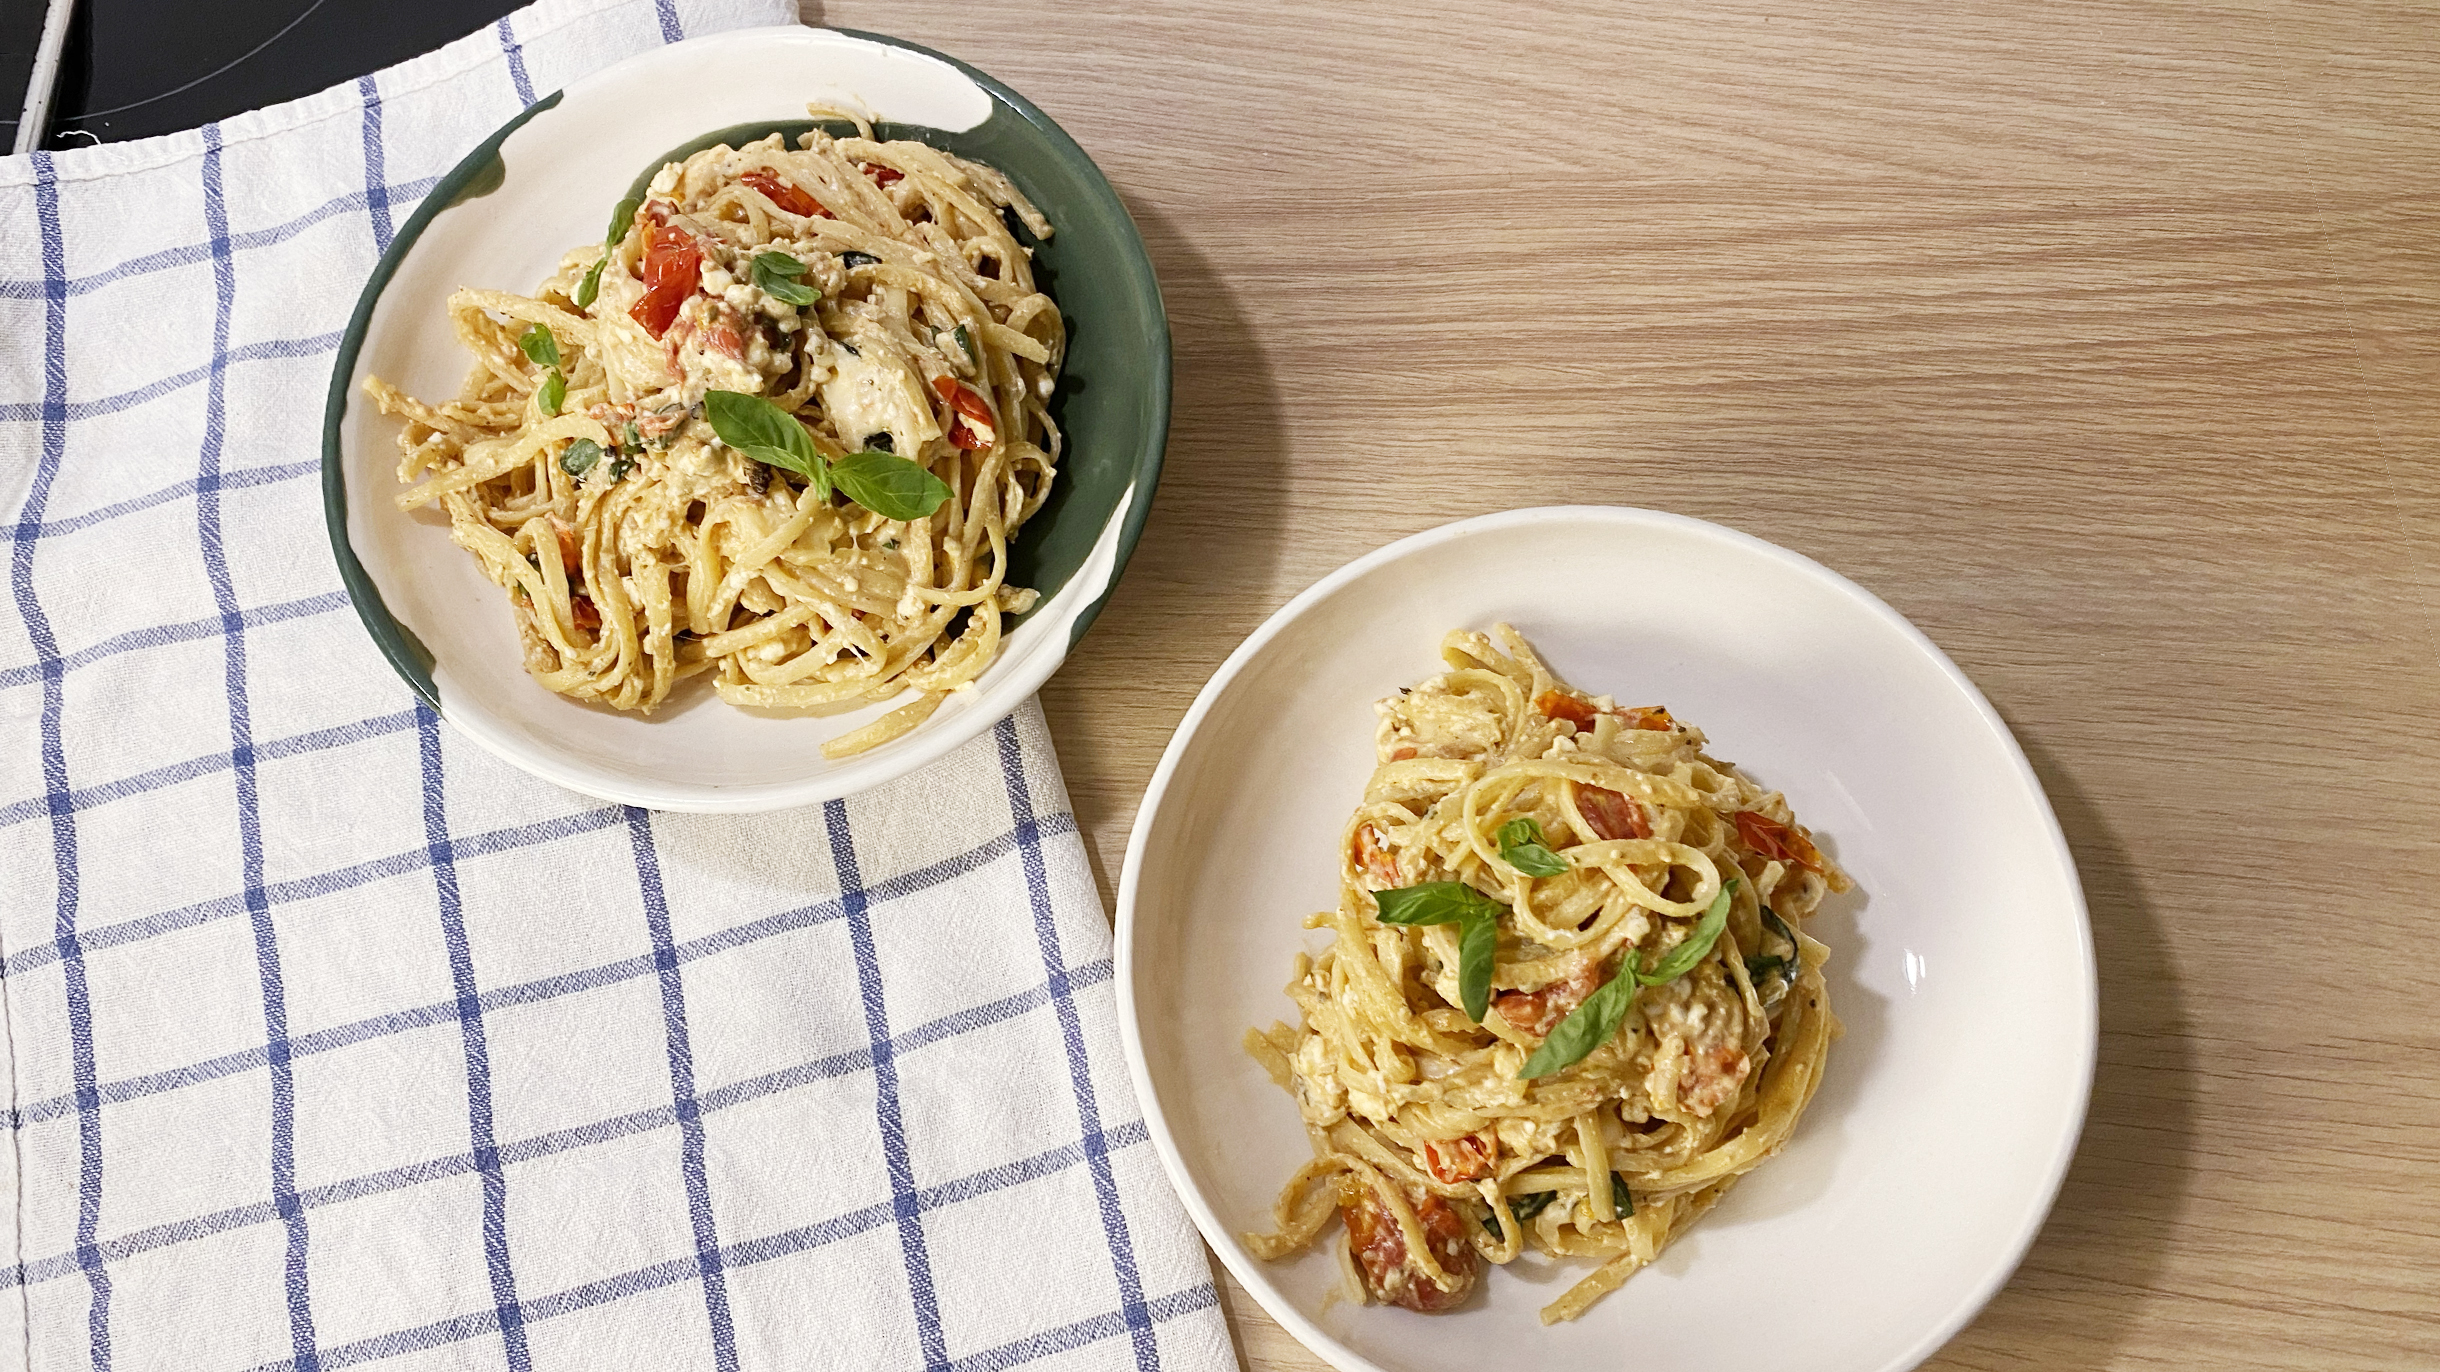 Ингредиенты для спагетти с сыром